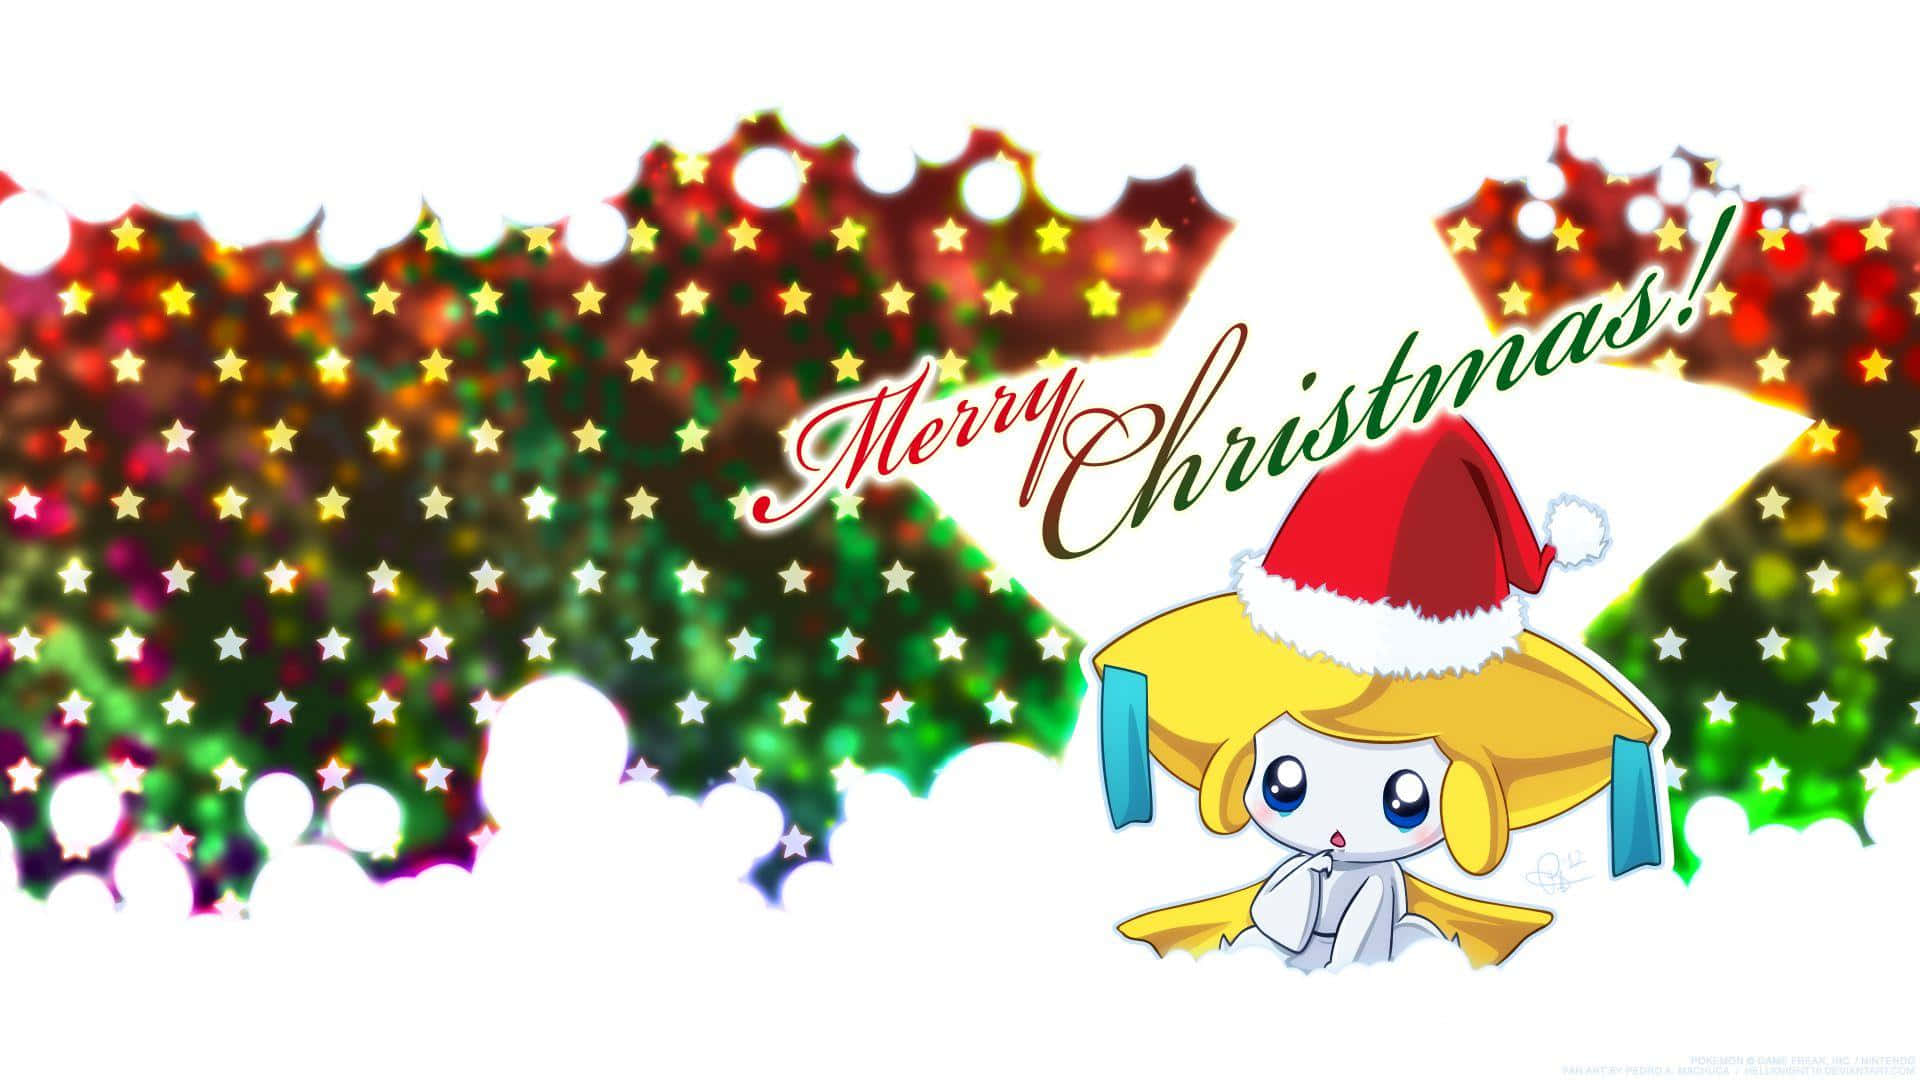 Celebrating Christmas like true Pokemon fans! Wallpaper